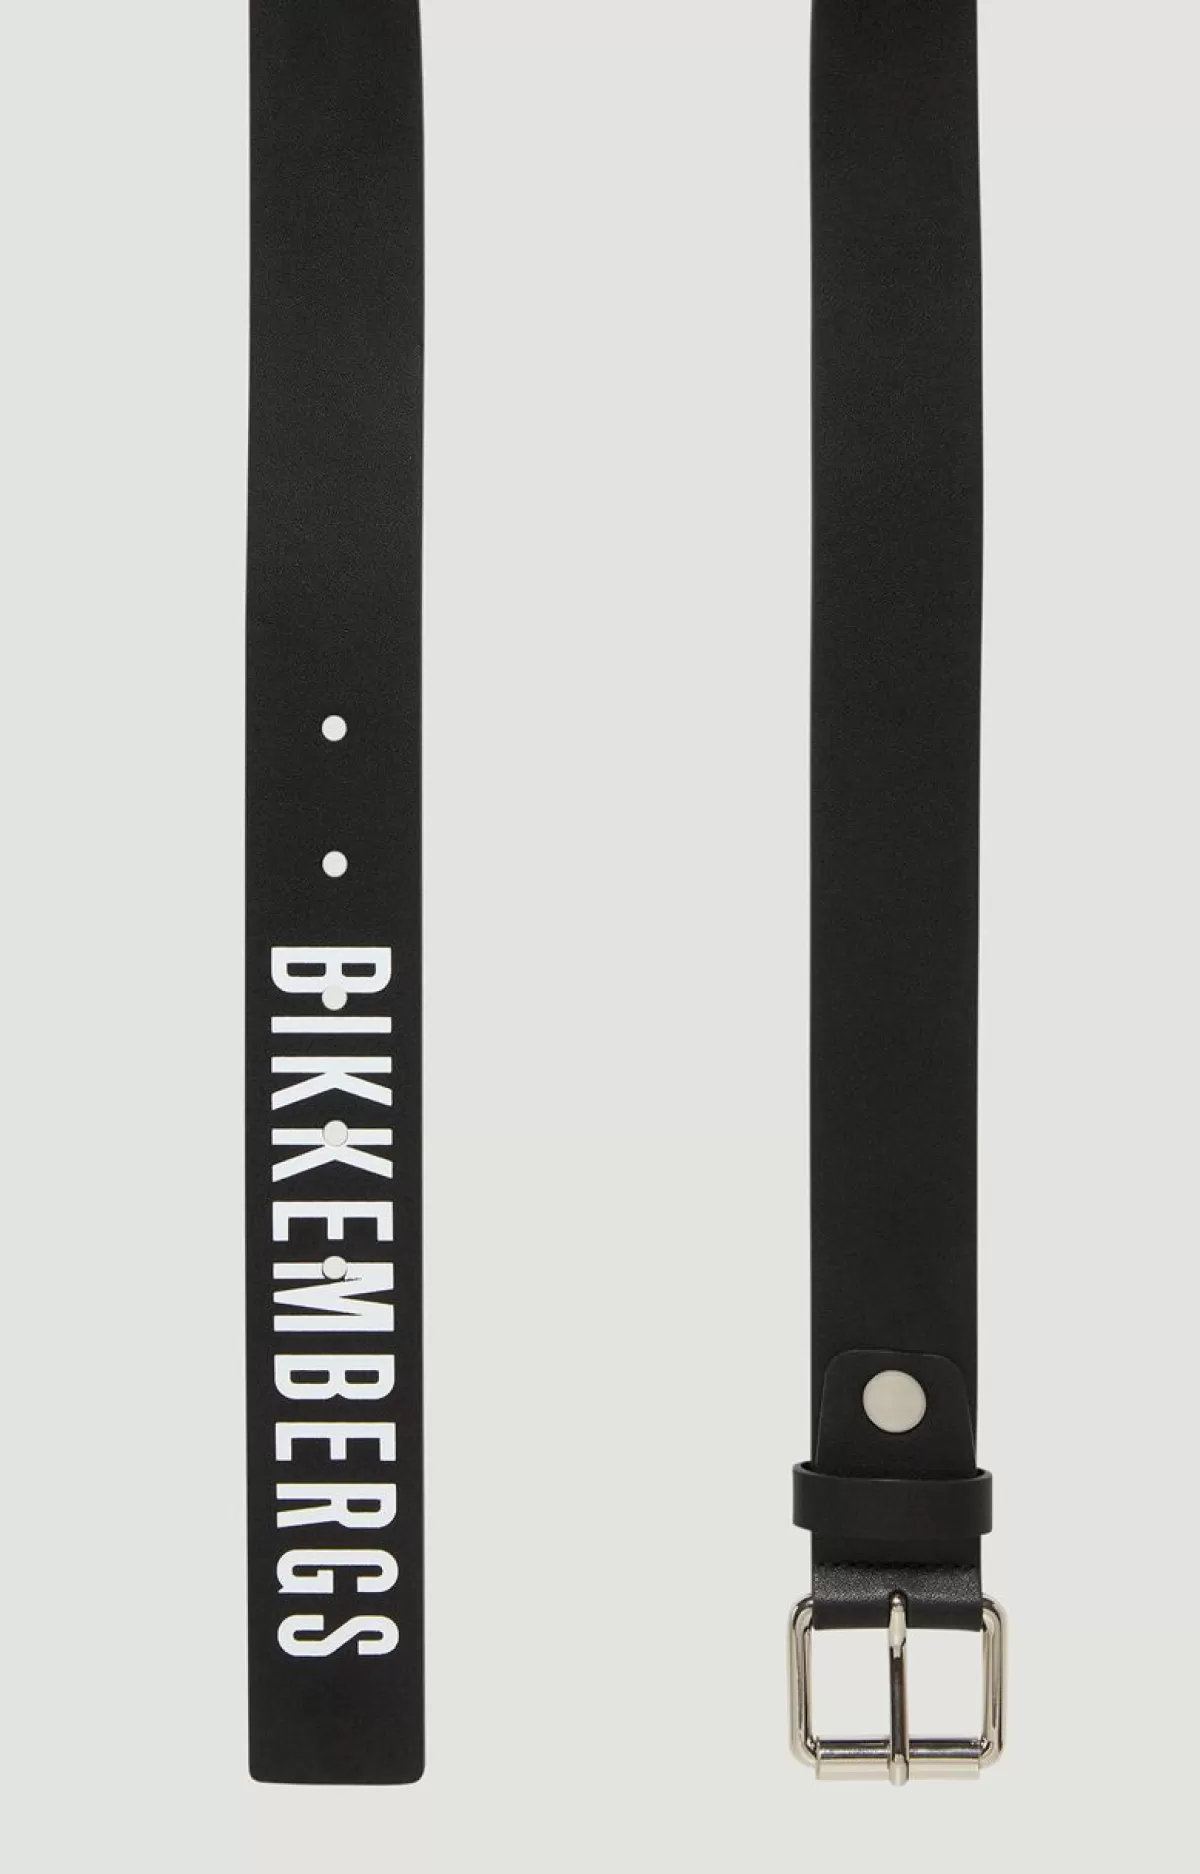 Bikkembergs Men'S Leather Belt With Contrast Logo Black Online